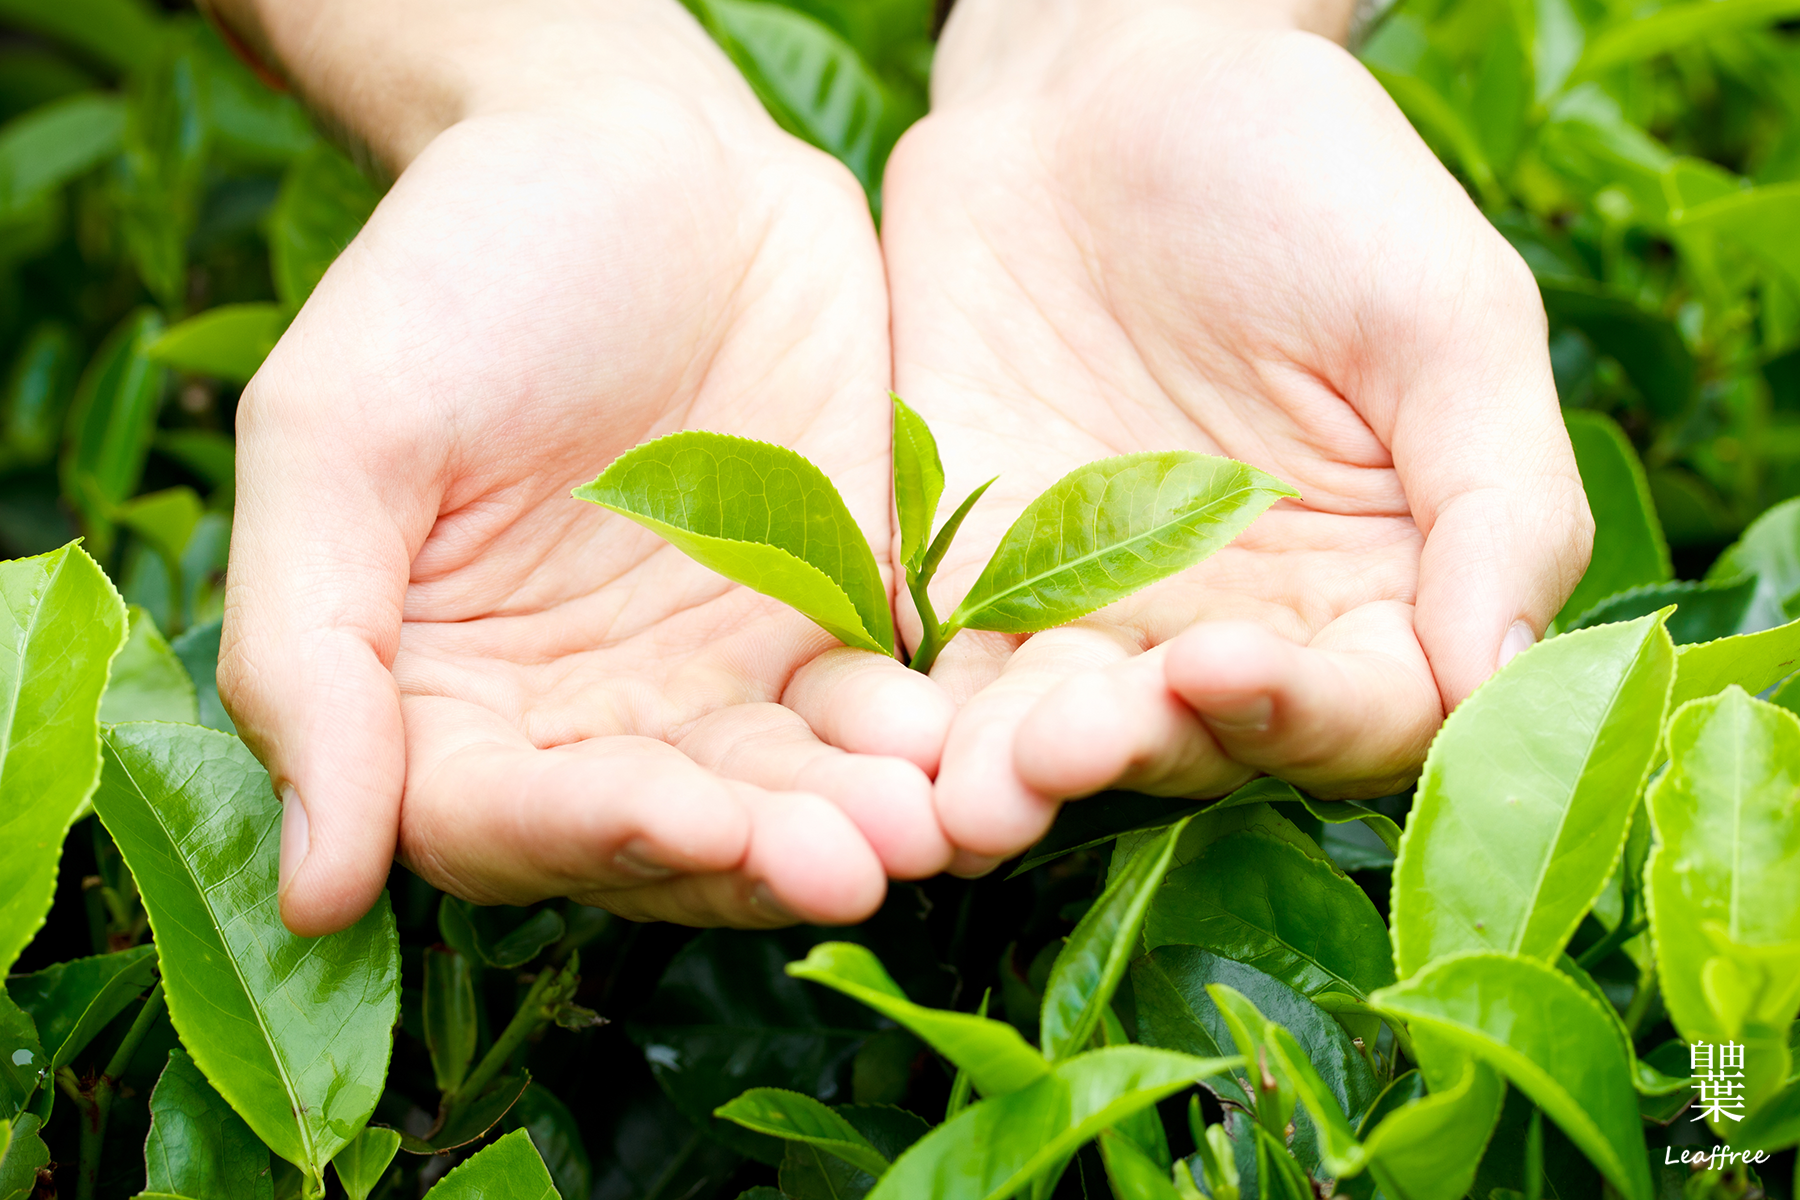 安全｜自由葉茶葉逐批「皆通過第三公證單位SGS、台灣茶業改良場農殘多重殘留分析檢測合格」，為消費者安全把關。深入產地了解茶農種茶／製茶理念後契作；代工廠均經ISO22000認證。